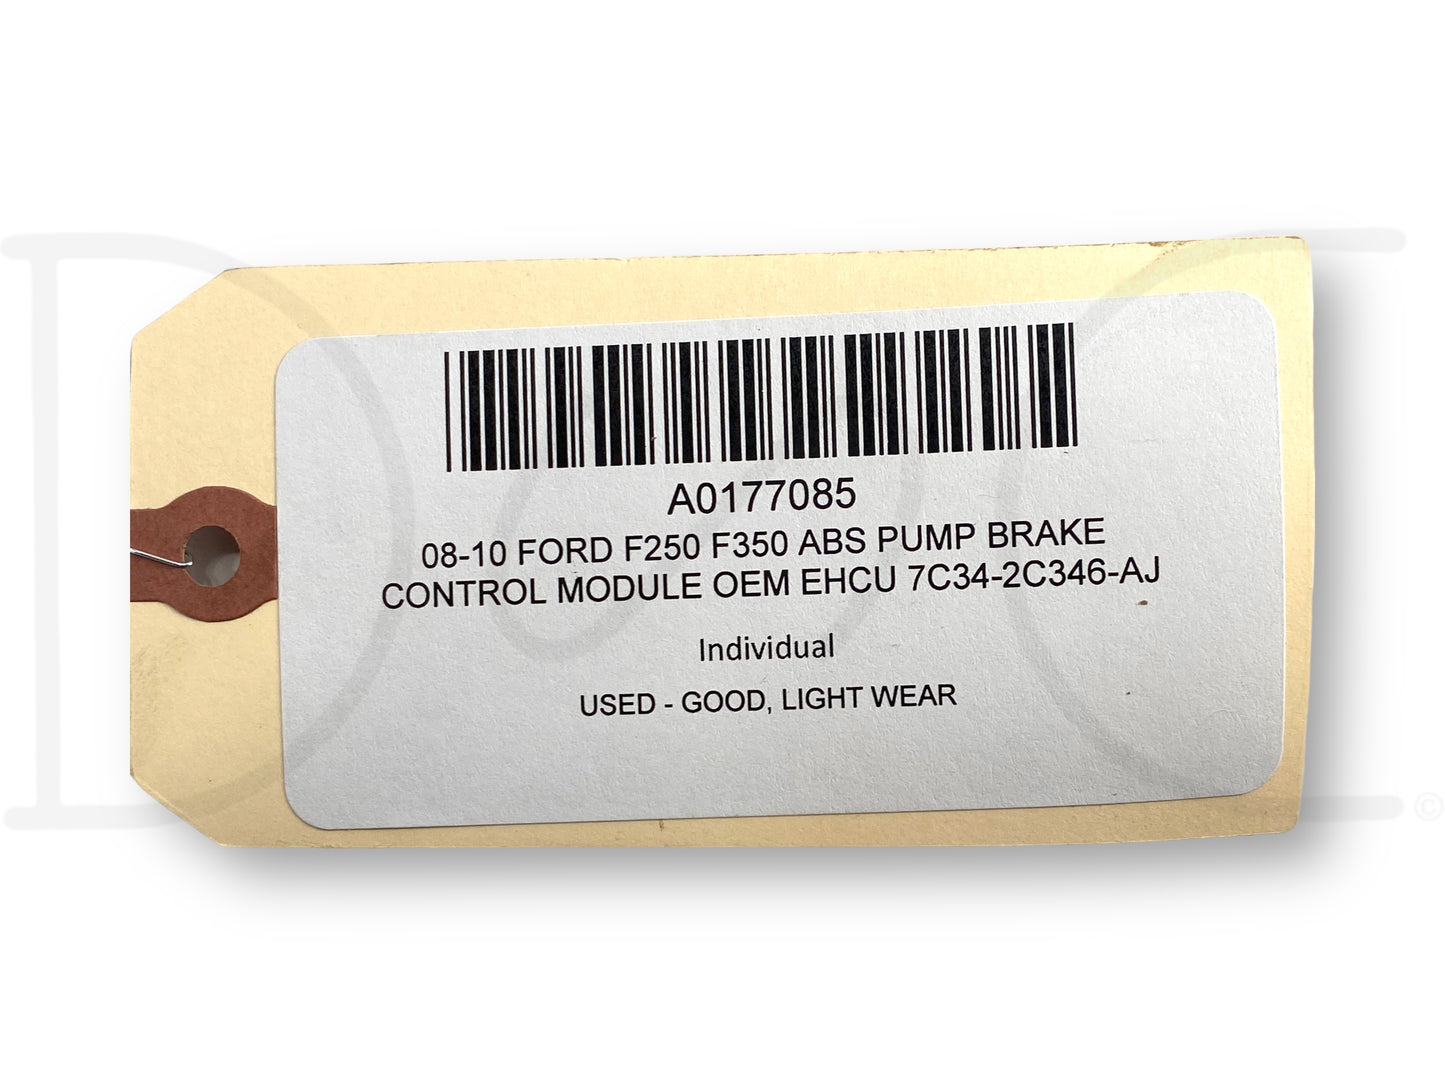 08-10 Ford F250 F350 ABS Pump Brake Control Module OEM EHCU 7C34-2C346-Aj